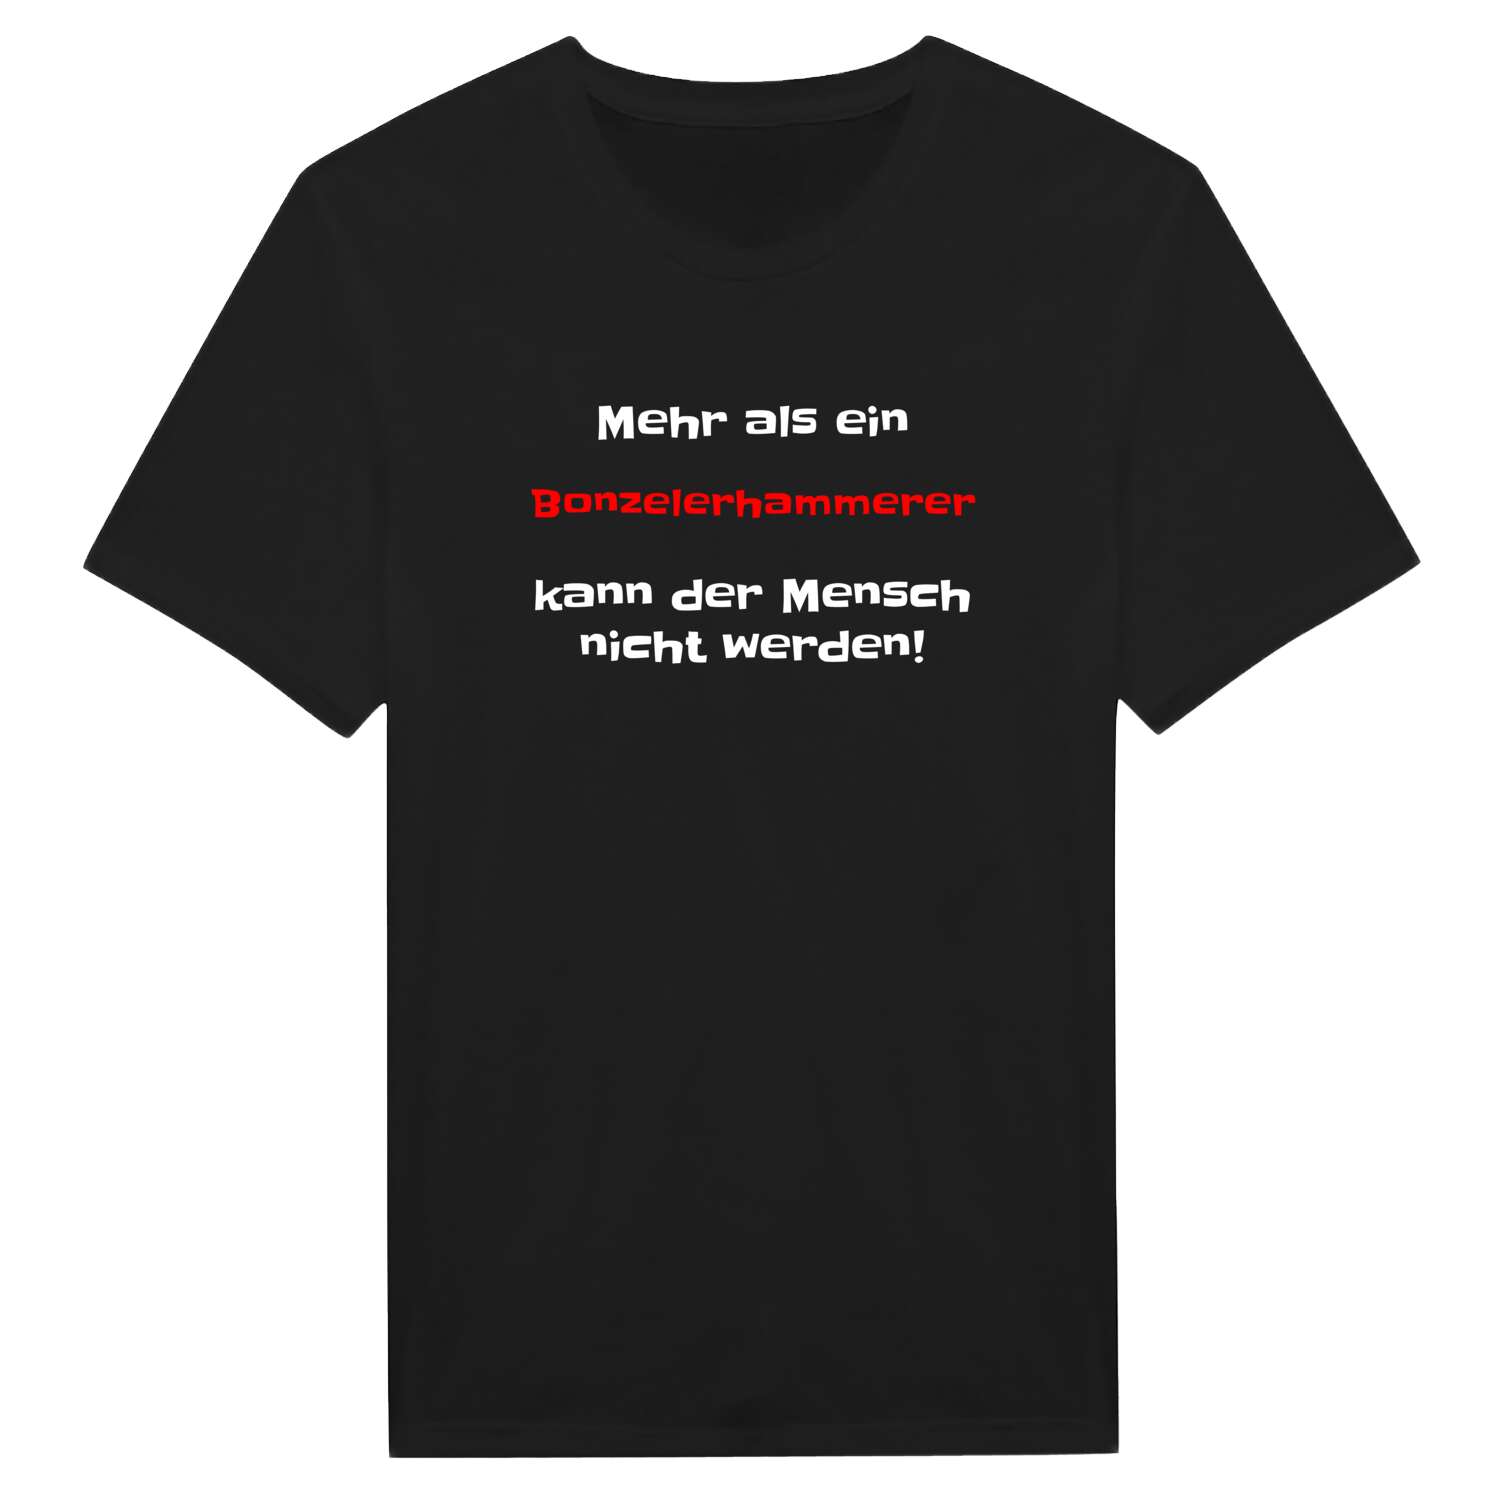 Bonzelerhammer T-Shirt »Mehr als ein«